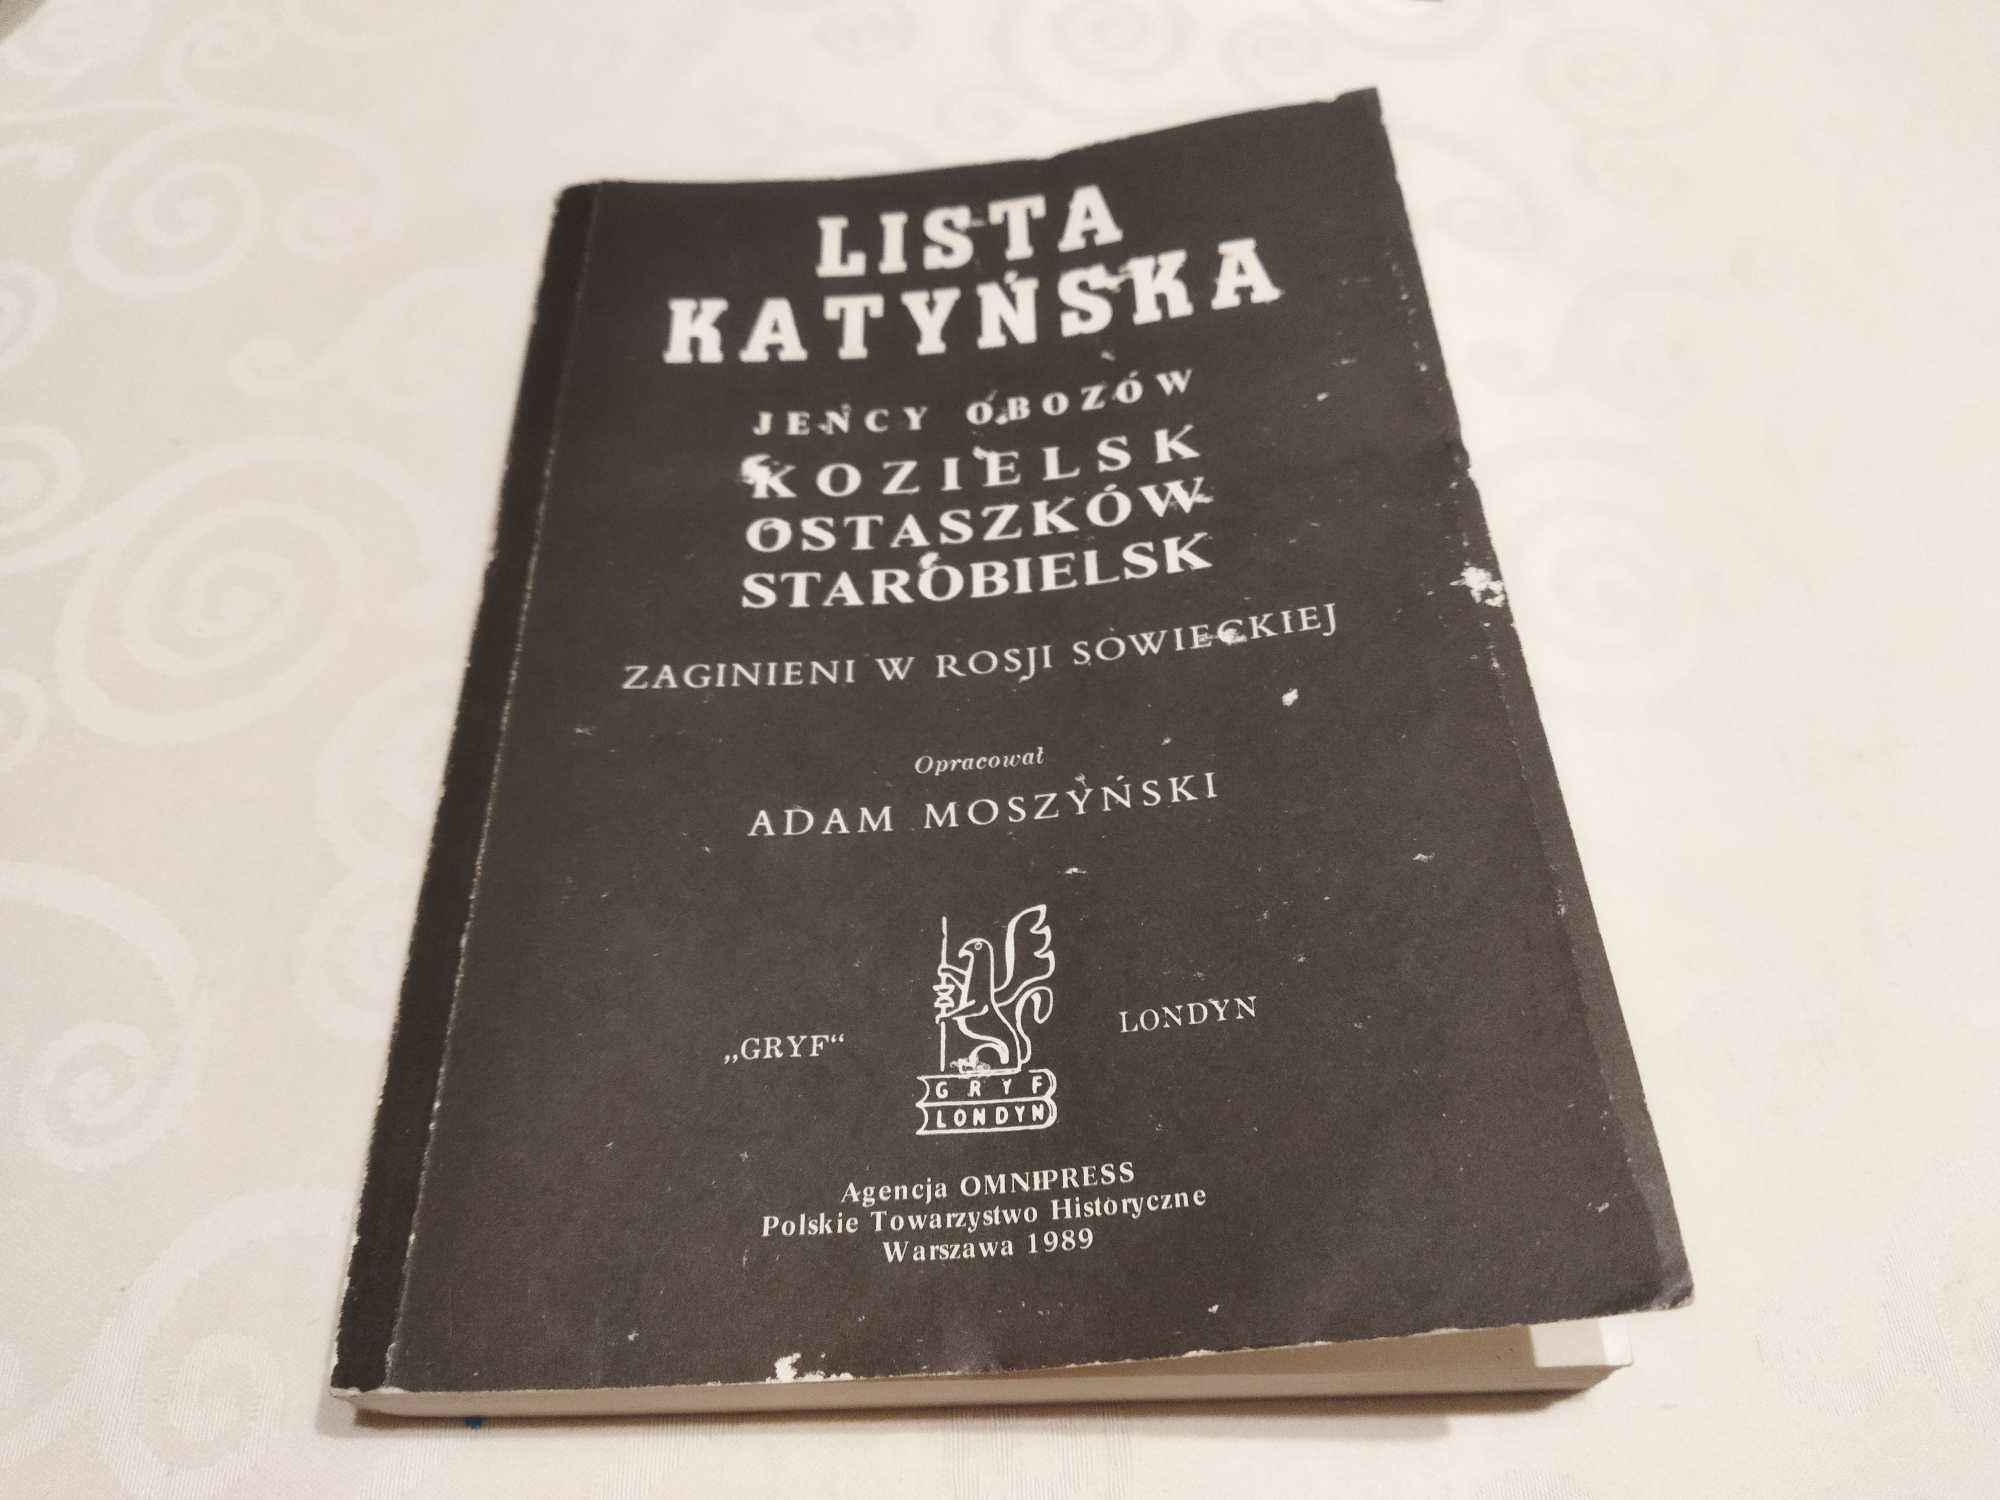 Książka "Lista katyńska" w opracowaniu Adama Moszyńskiego